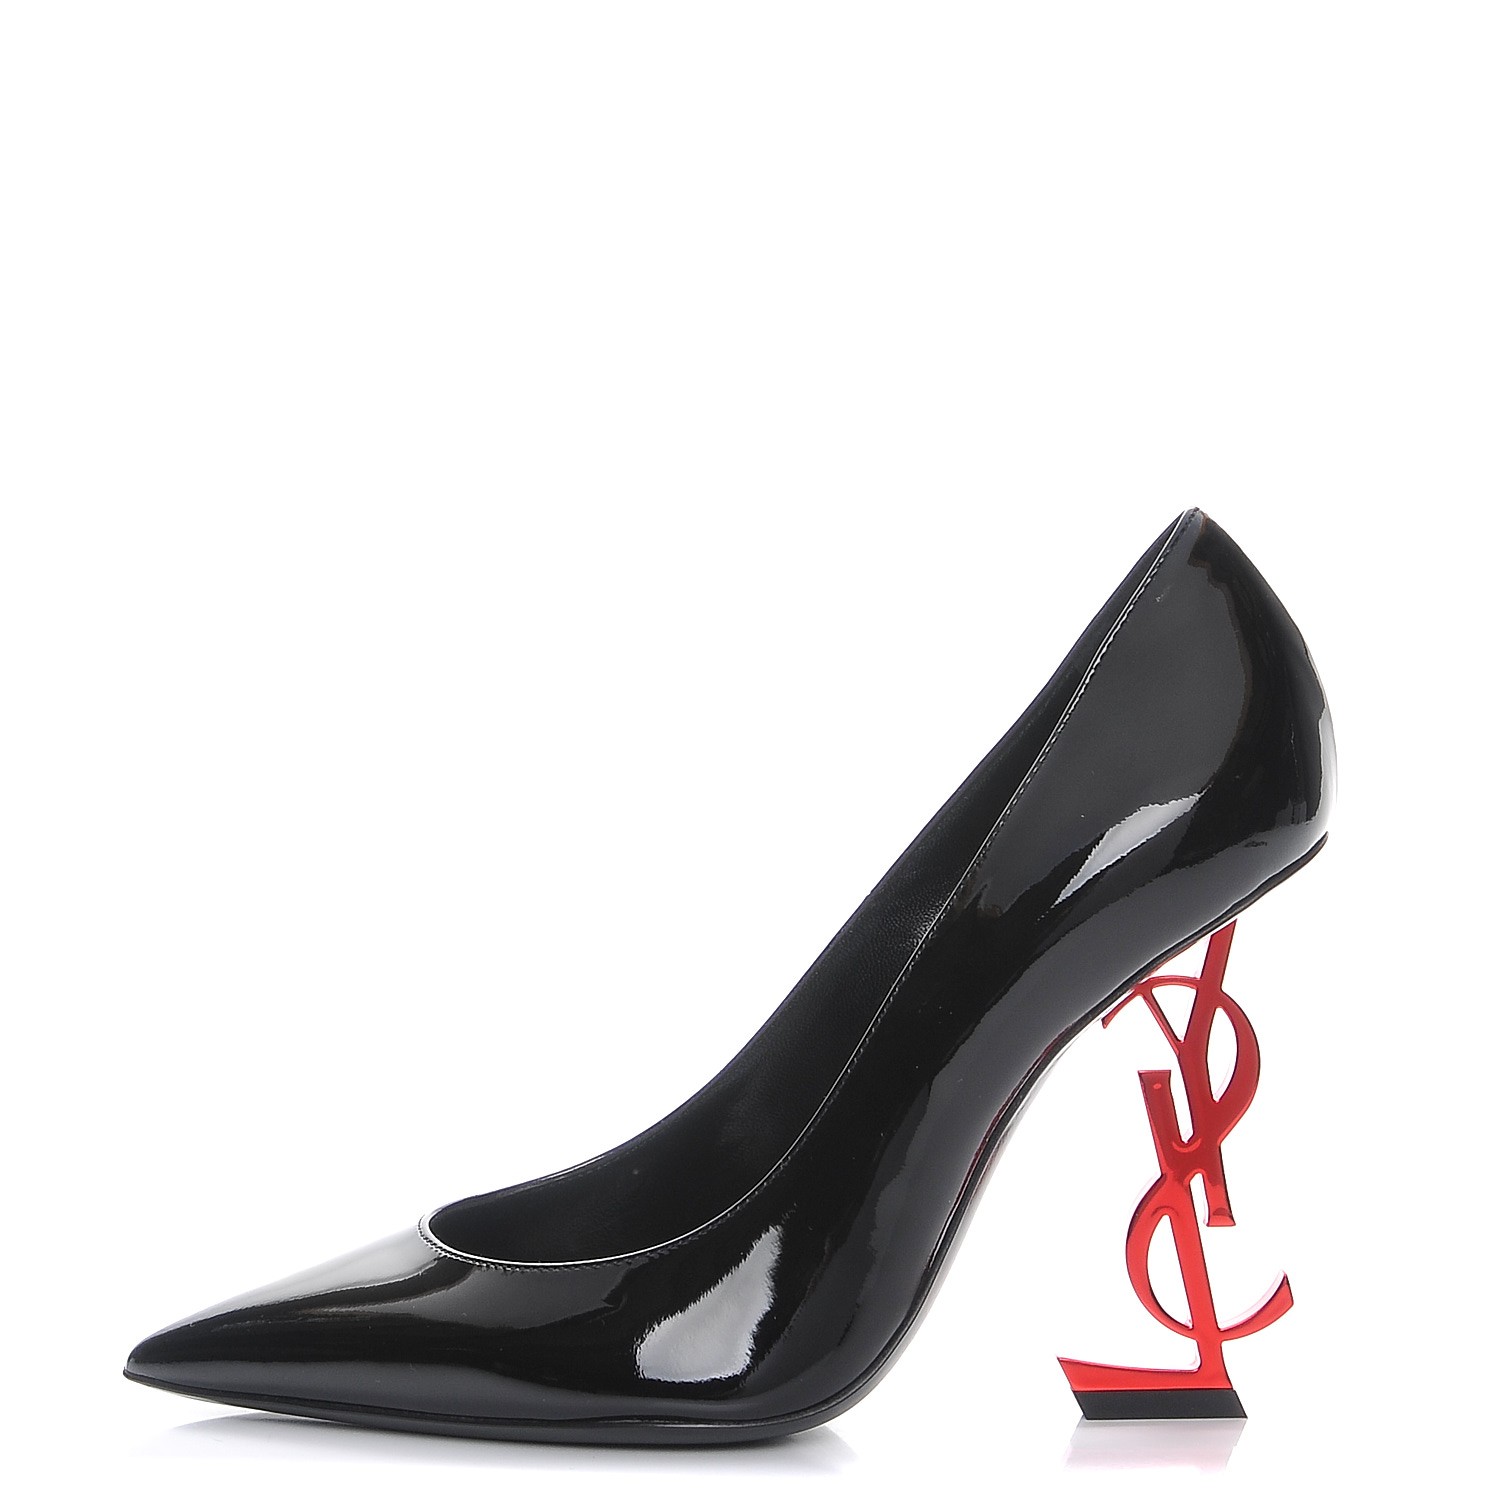 saint laurent red heels